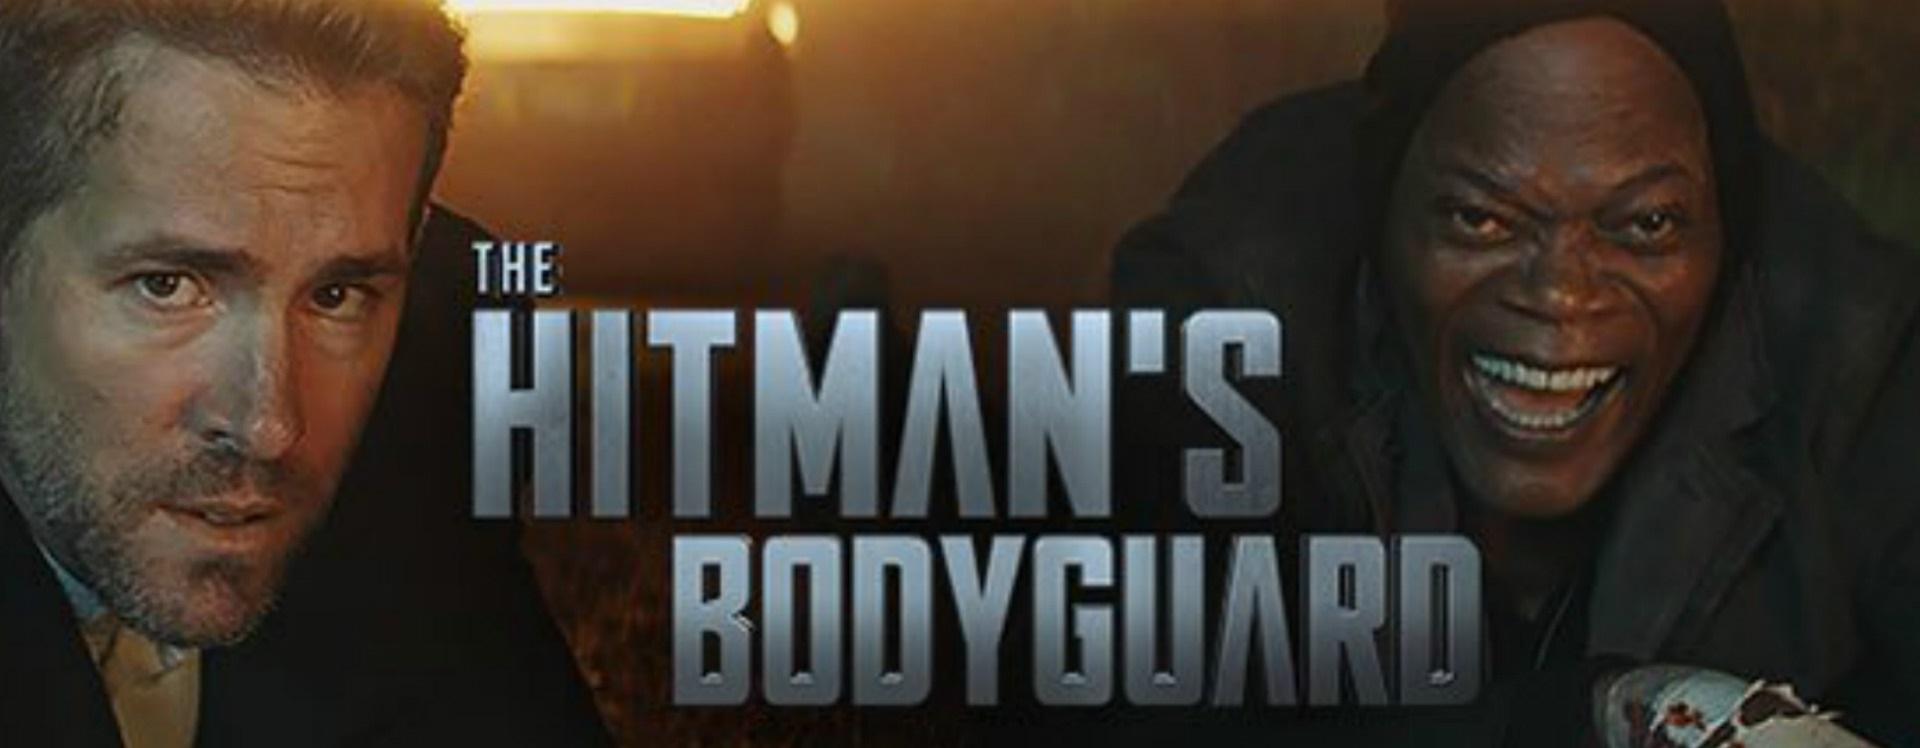 بوستر فيلم The Hitman's Bodyguard